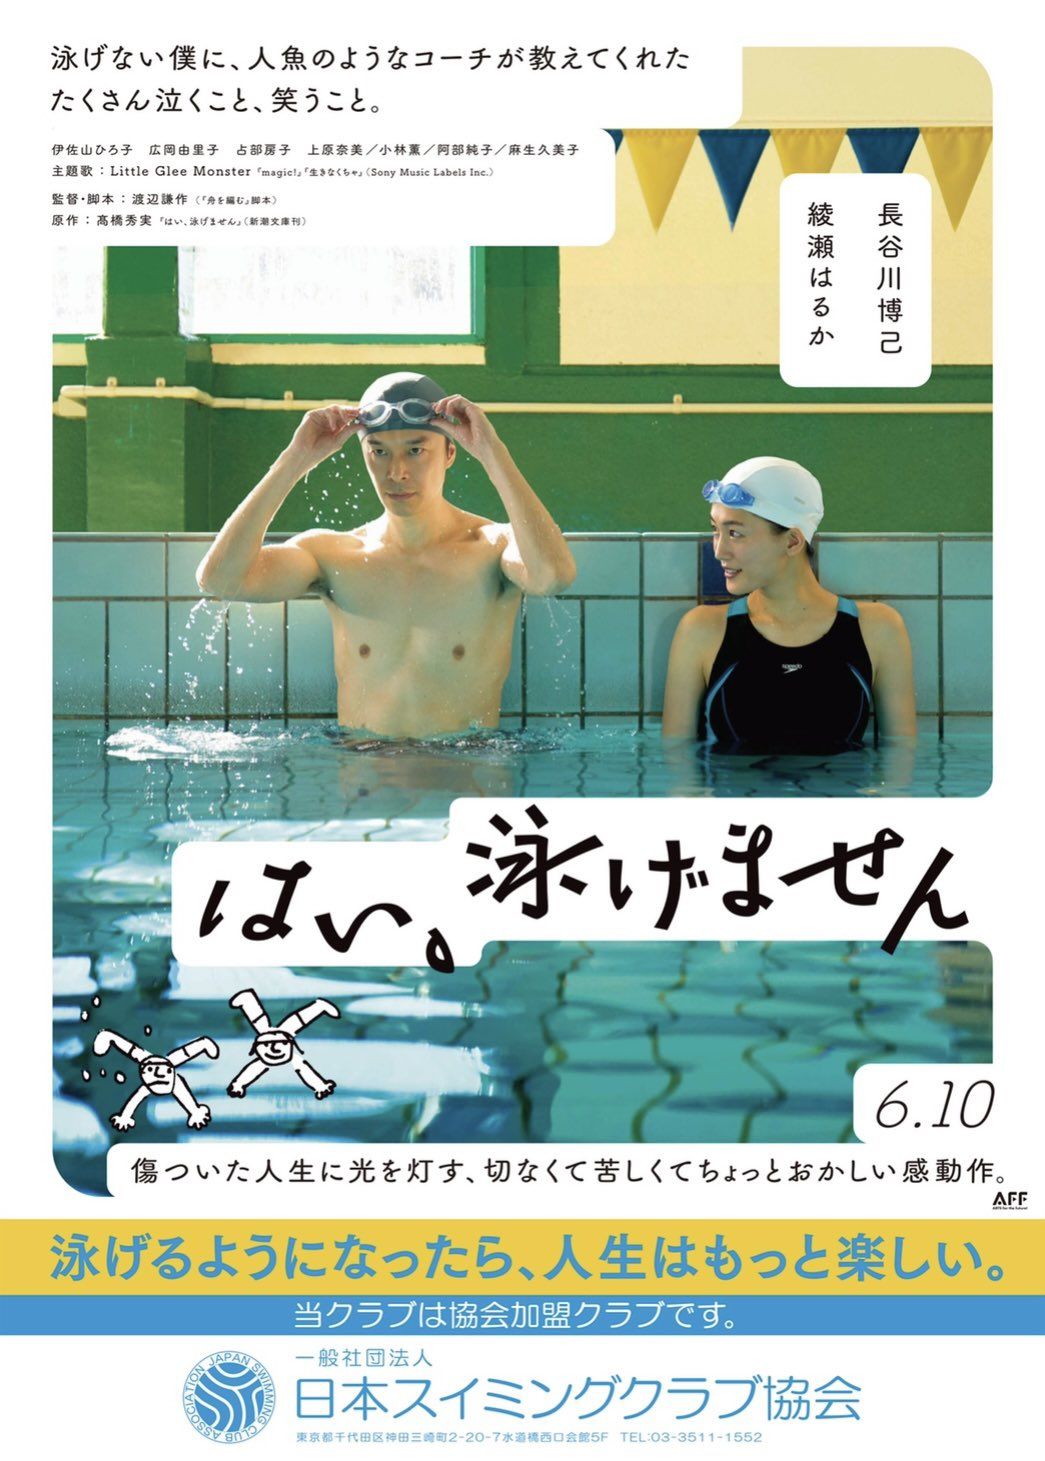 綾瀬はるか「美肌ランキング」ダントツ1位でますます期待が高まる「元夫」長谷川博己との共演と「6月の競泳水着」の画像